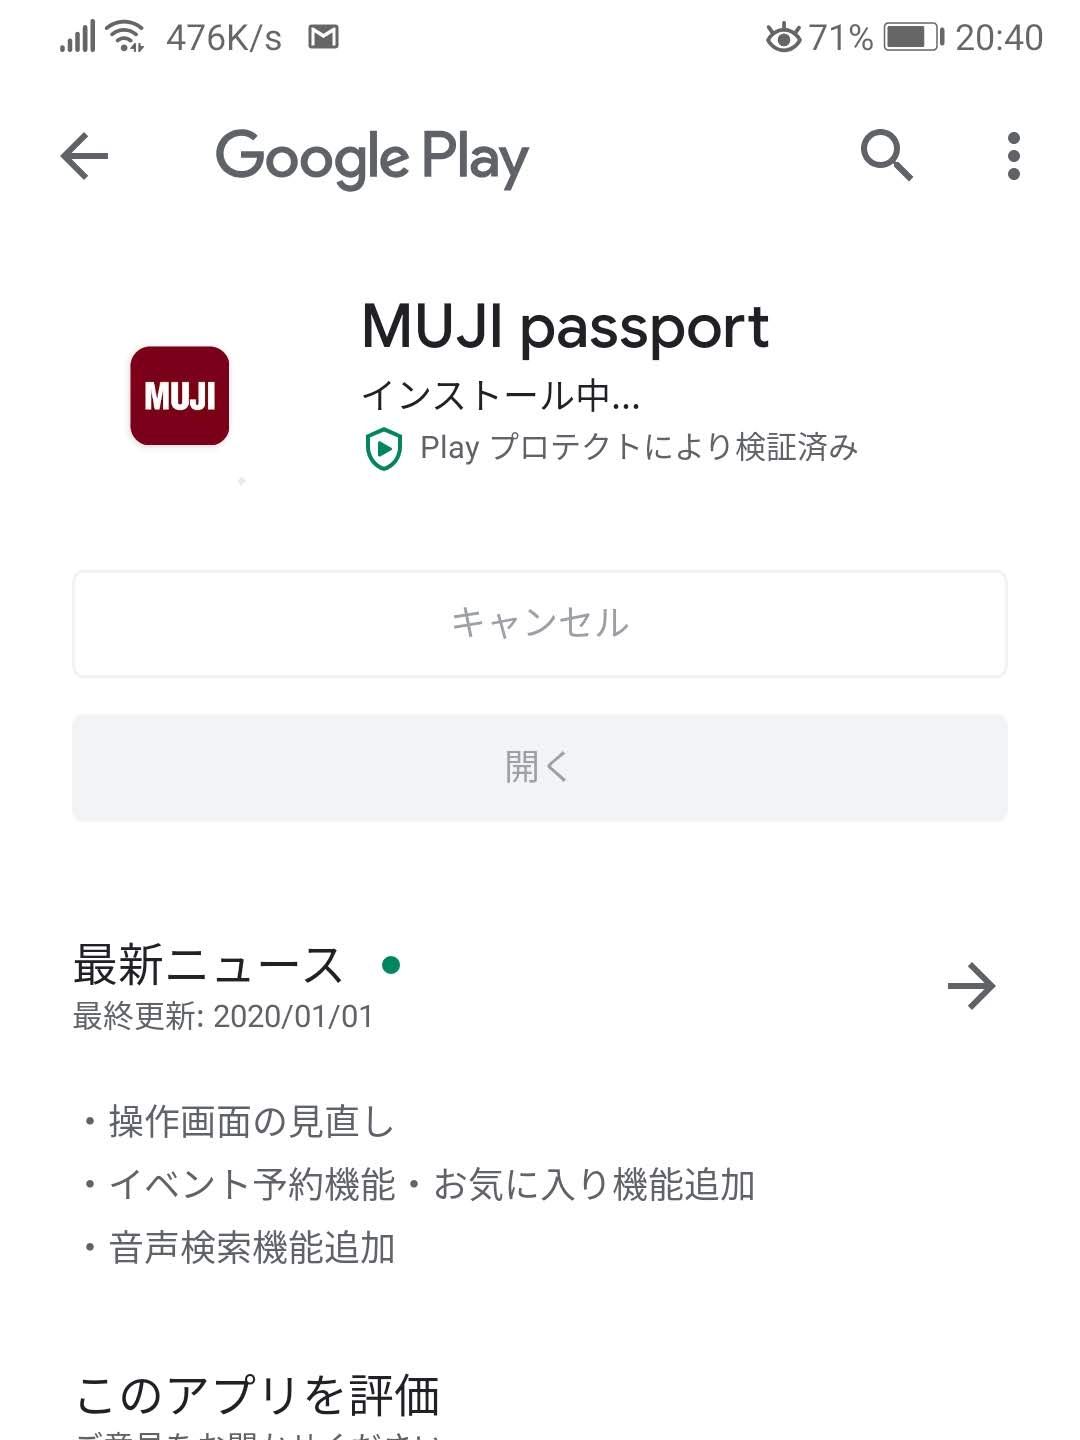 MUJI passport